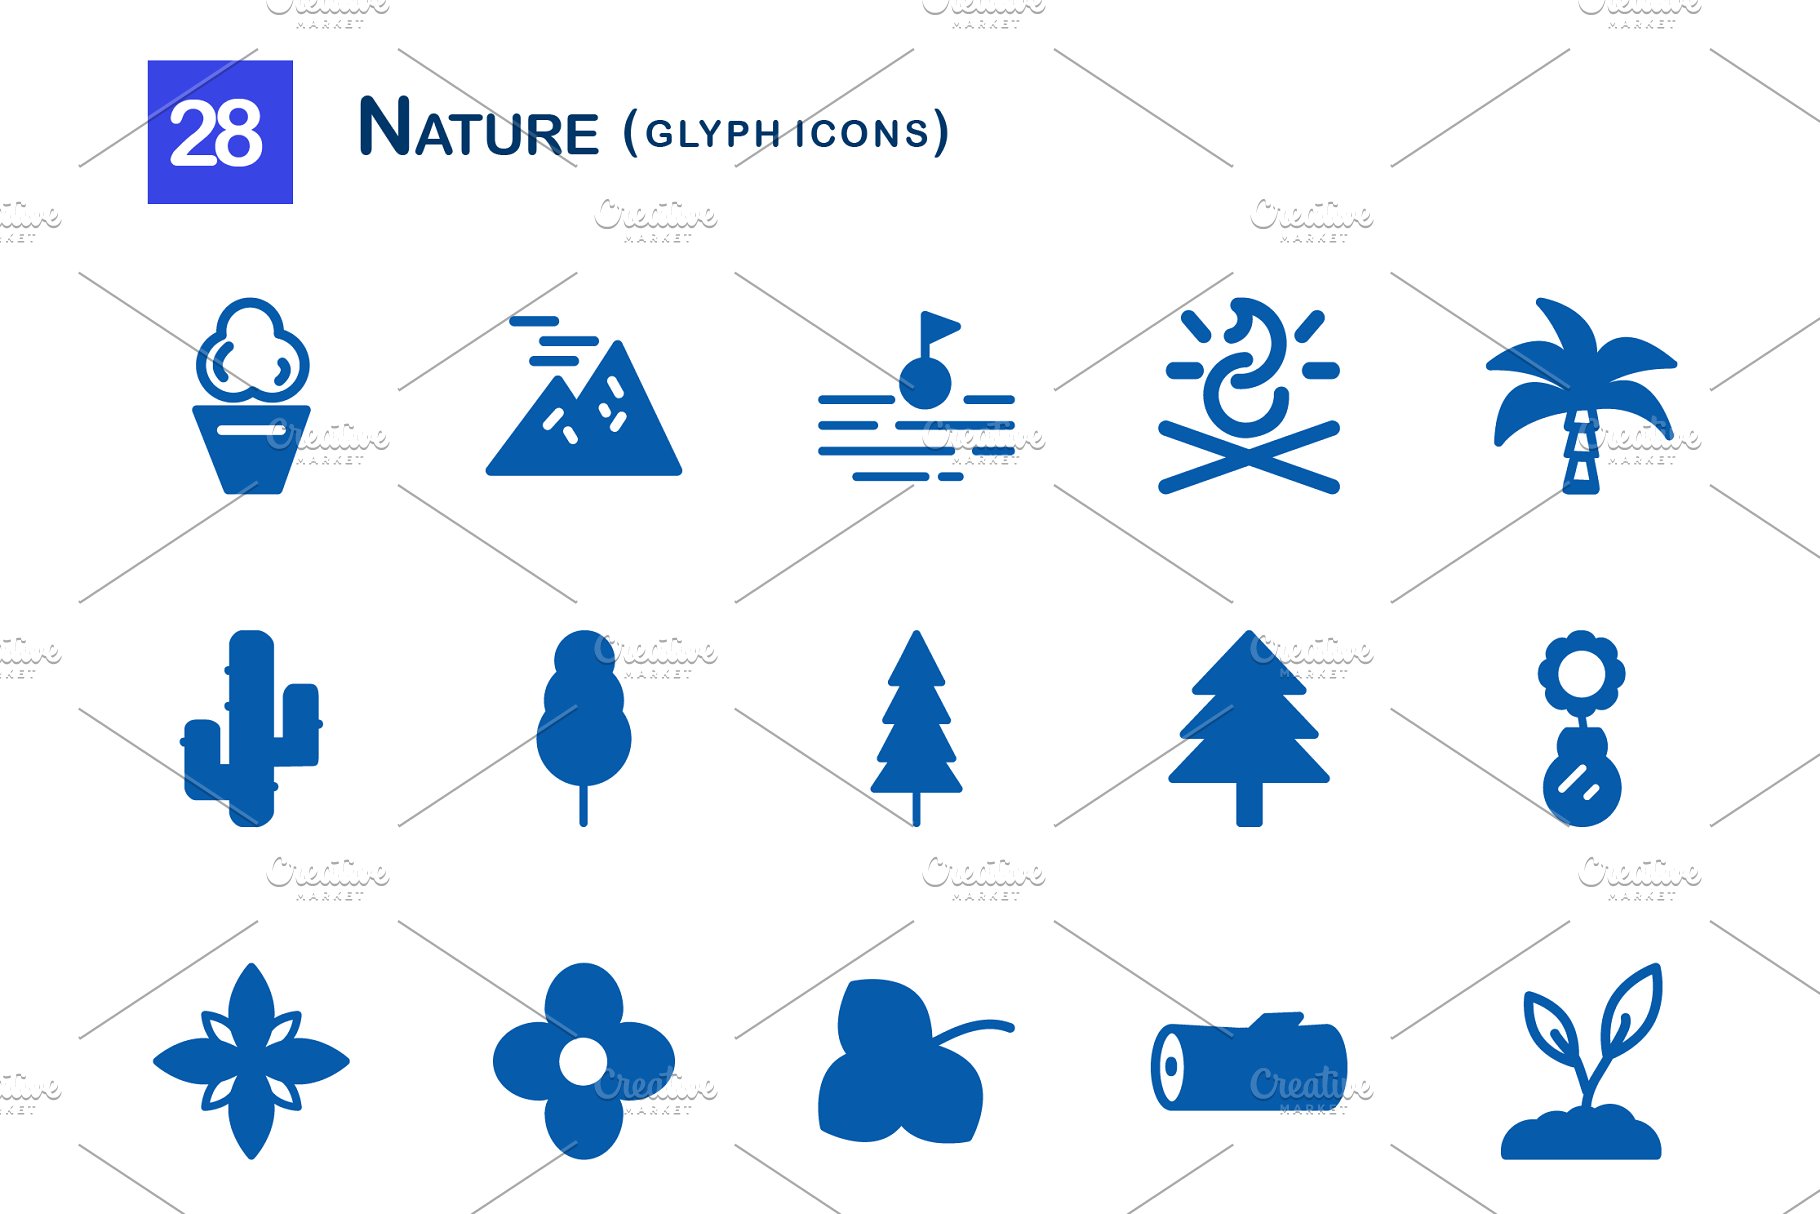 28个大自然元素字体亿图网易图库精选图标 28 Nature Glyph Icons插图(1)